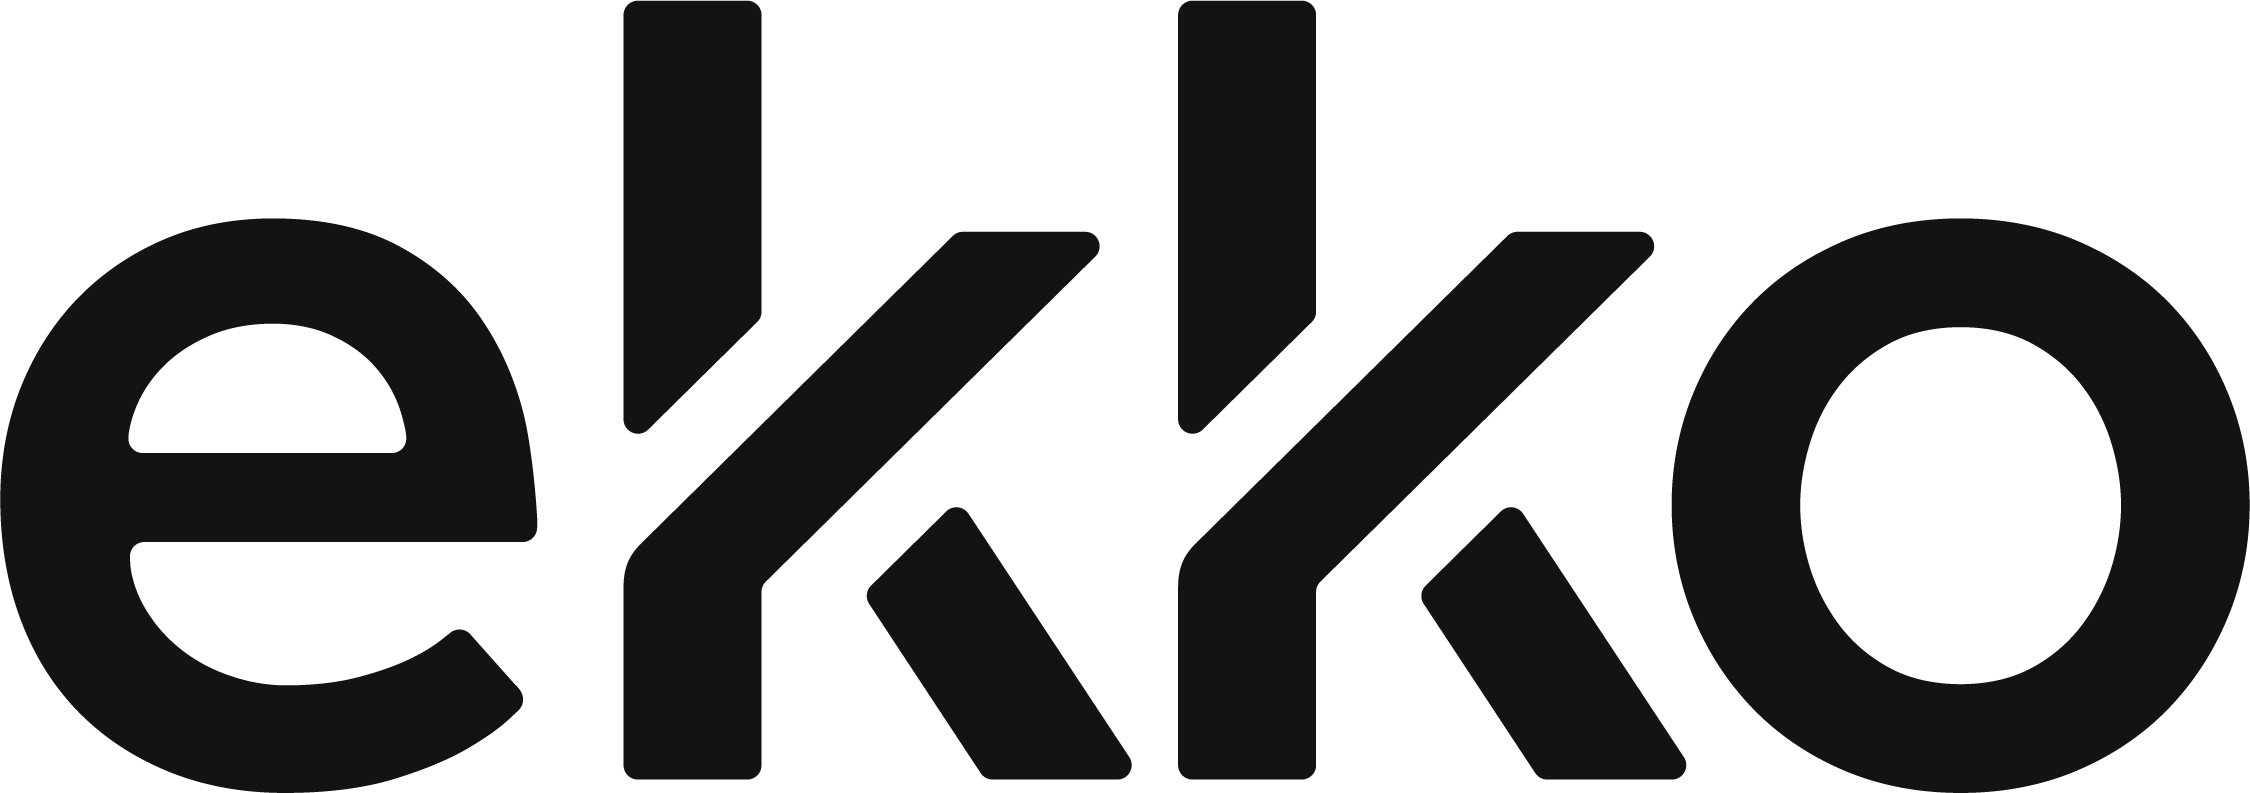 ekko logo